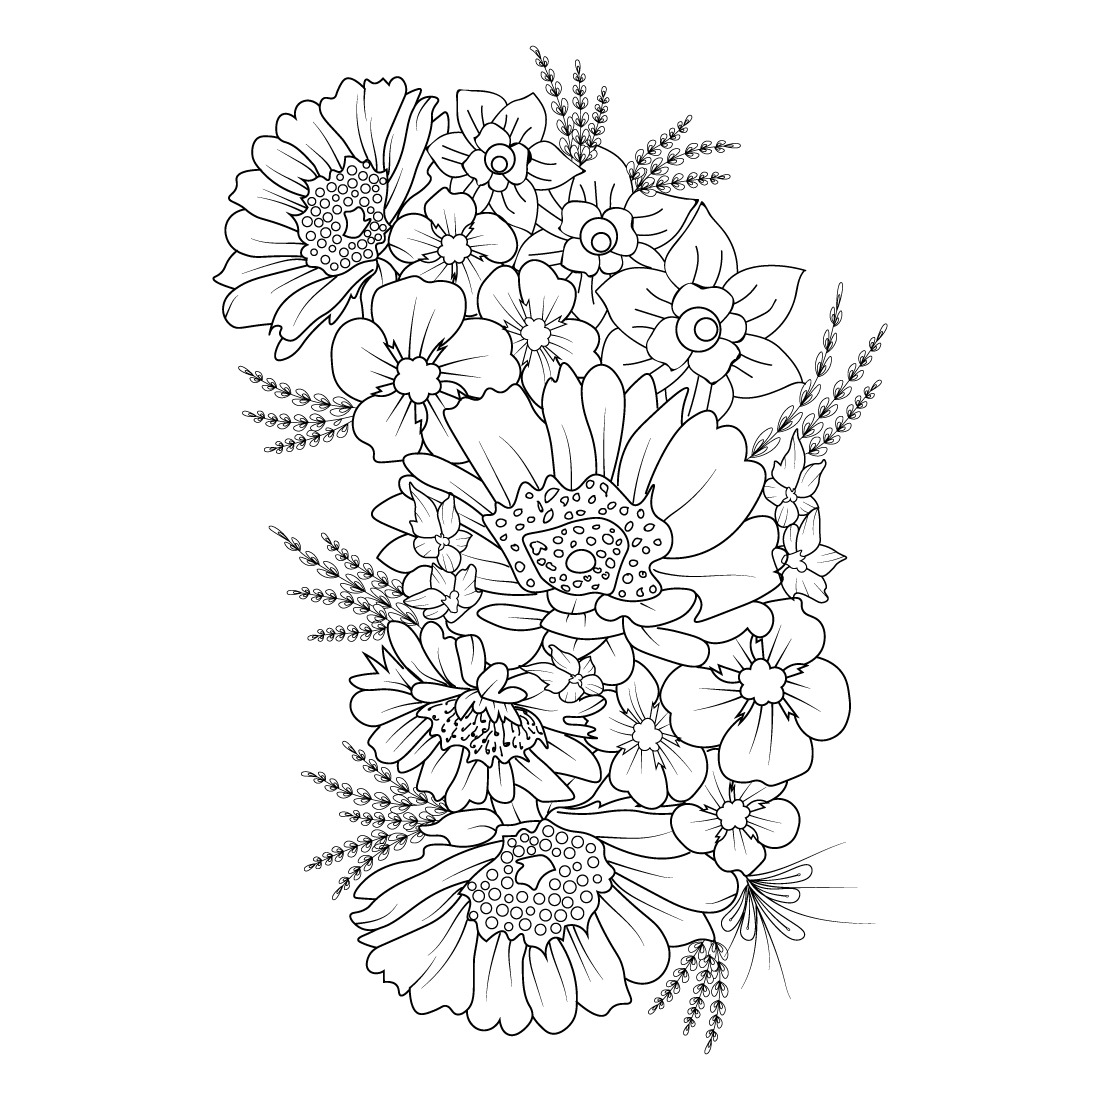 Aesthetic flower doodles, aesthetic flower doodles transparent background, aesthetic flower doodle simple, flower doodle art, flower doodle zentangle art, flower doodle zentangle art tattoos preview image.